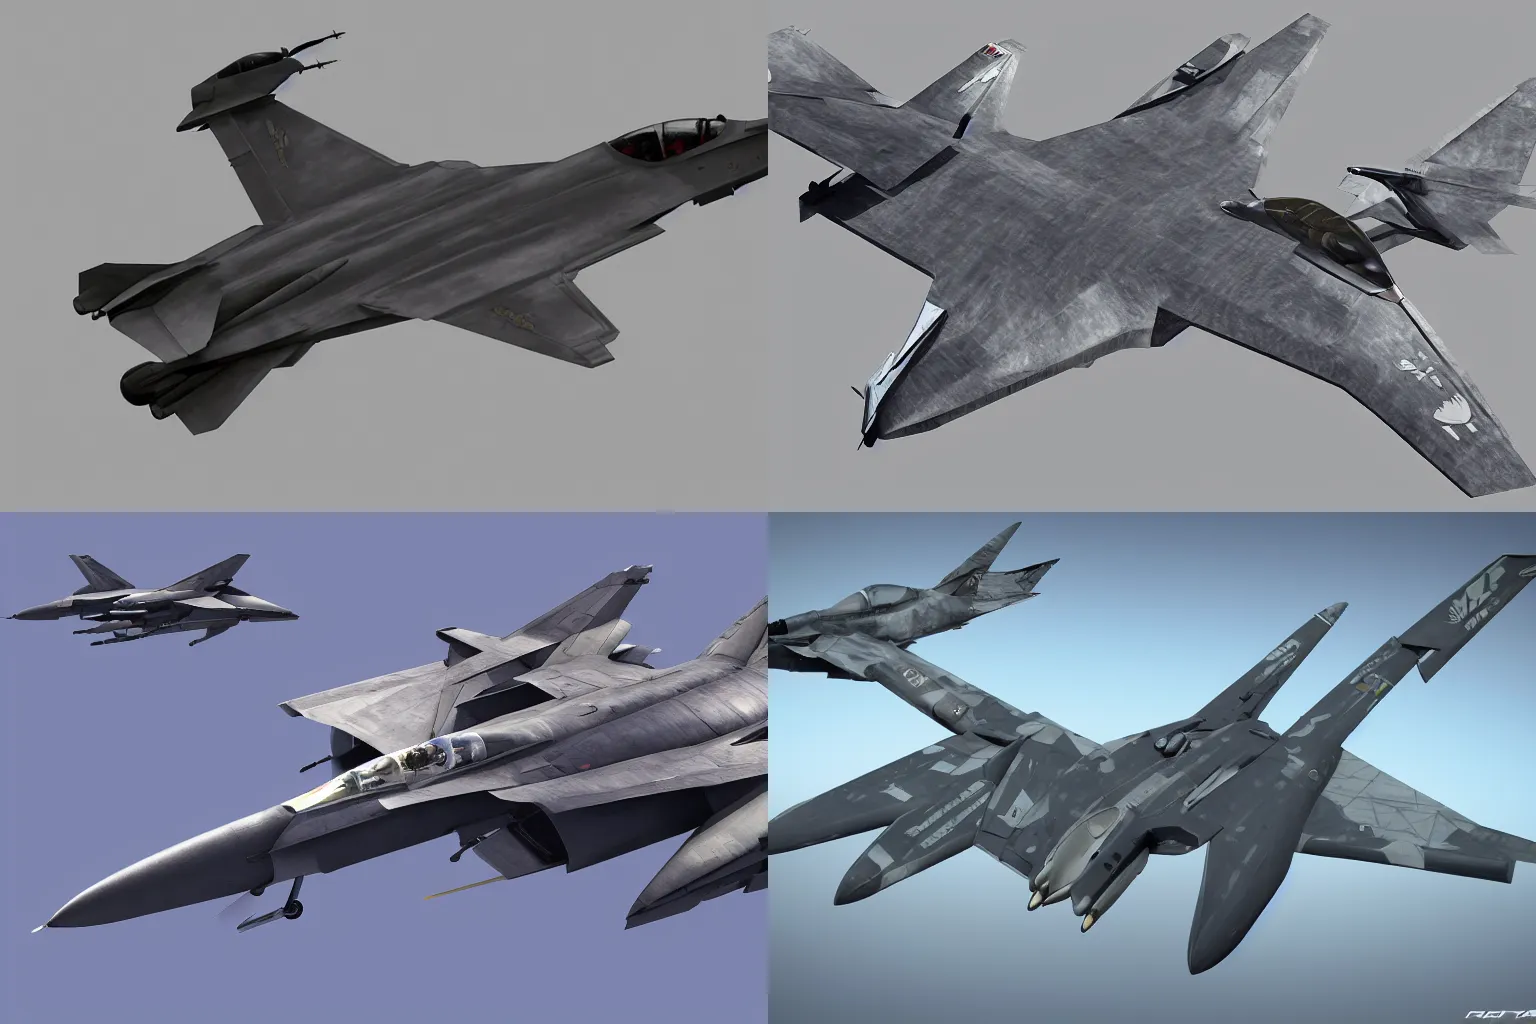 Prompt: iconic fighter jet plane designed by shoji kawamori, tomcat raptor hornet falcon, detailed, trending on artstation